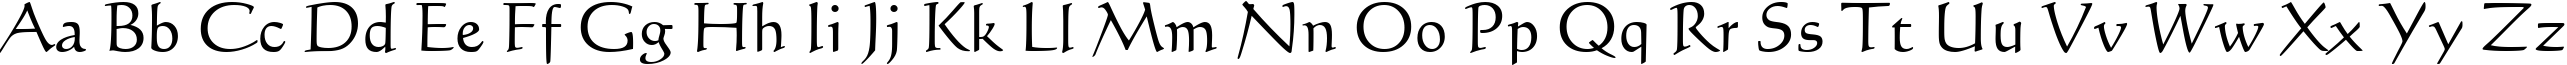 Пример написания английского алфавита шрифтом Calligraphic 421 BT